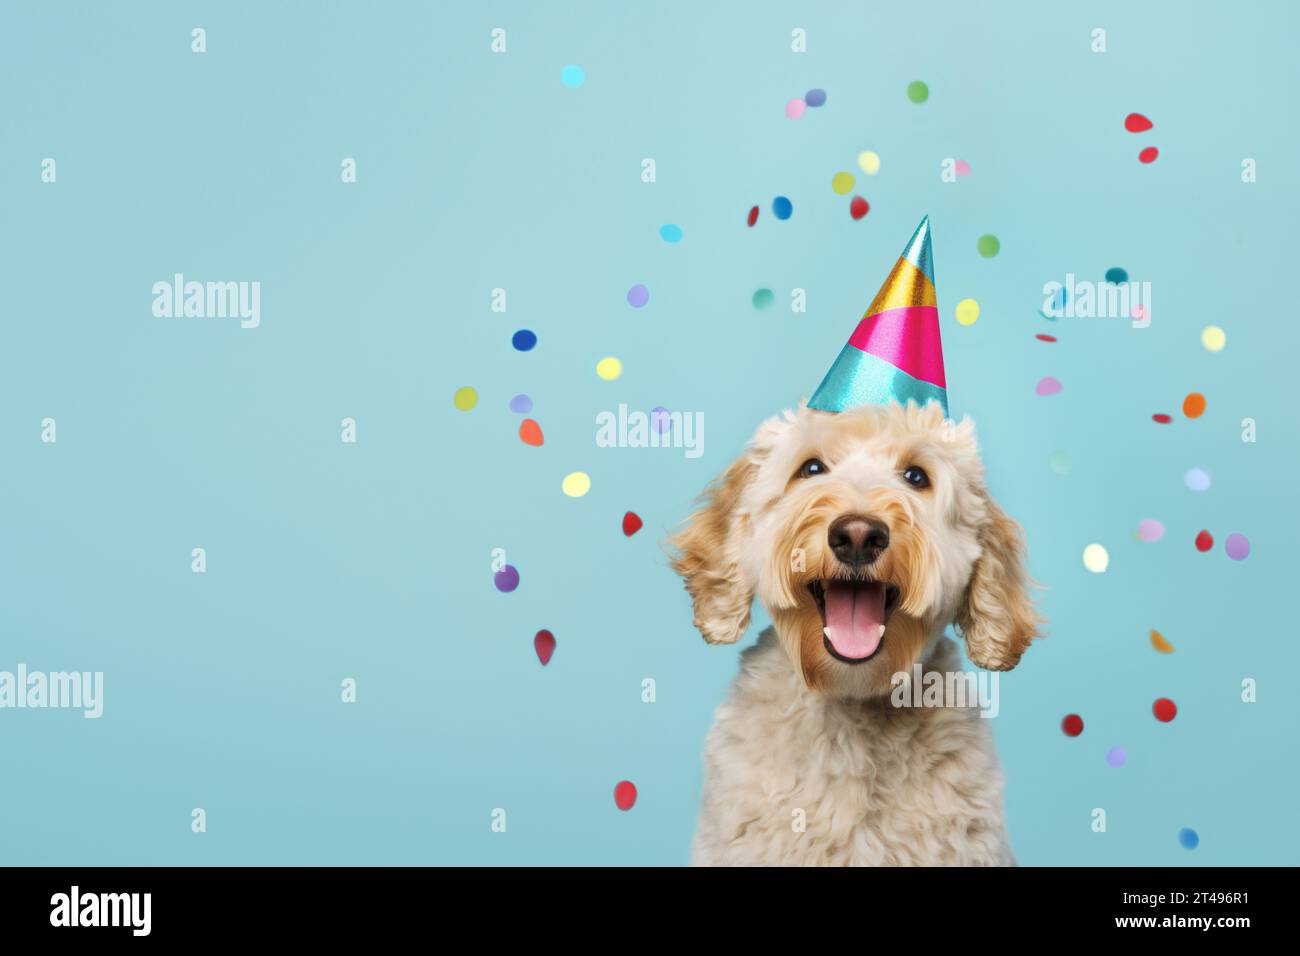 Felice e carino cane labradoodle che indossa un cappello da festa per festeggiare una festa di compleanno, circondato da coriandoli caduti Foto Stock